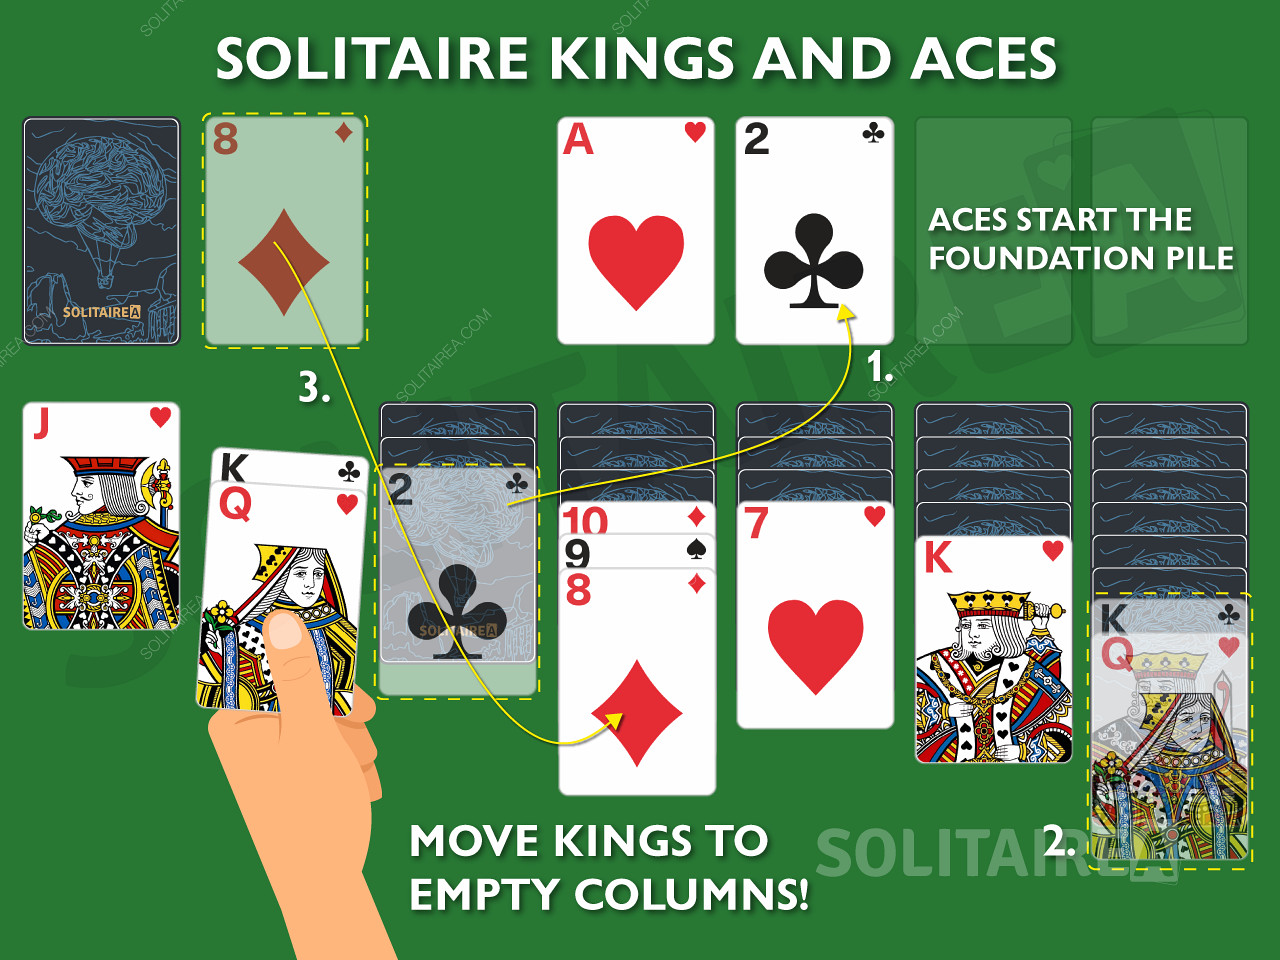 킹과 에이스는 솔리테어에서 고유한 움직임이 허용되므로 중요한 카드입니다.